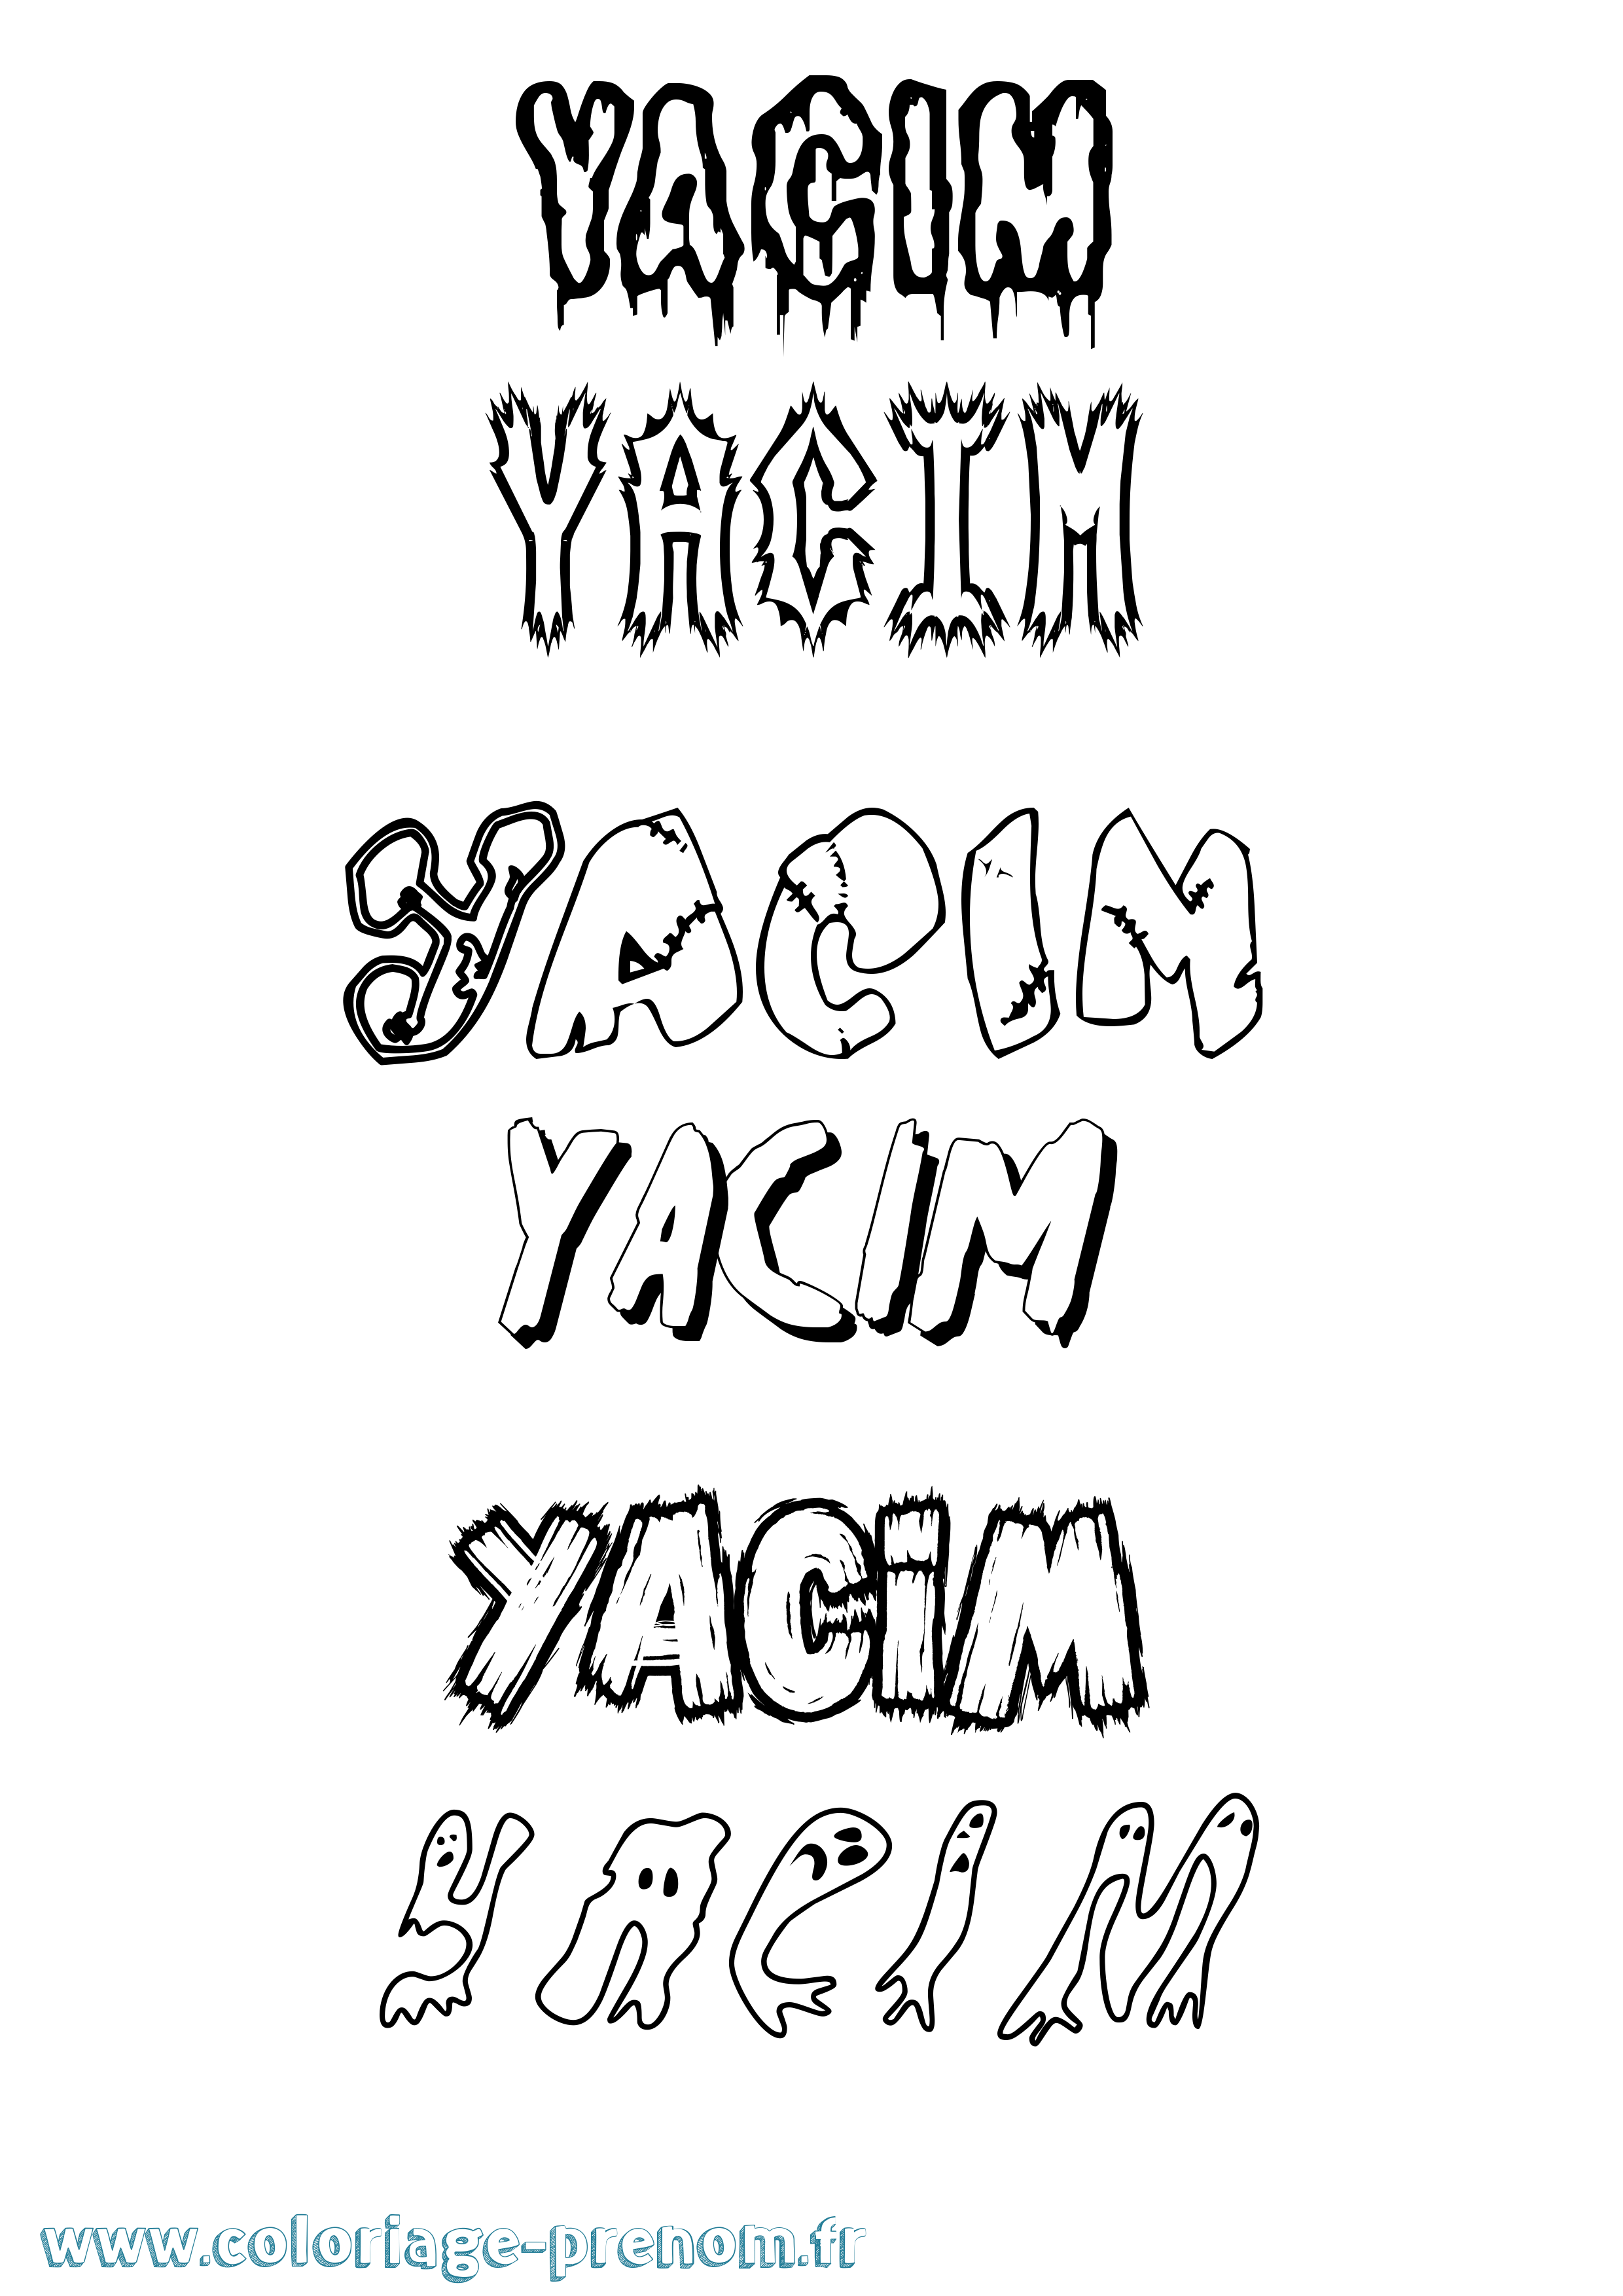 Coloriage prénom Yacim Frisson